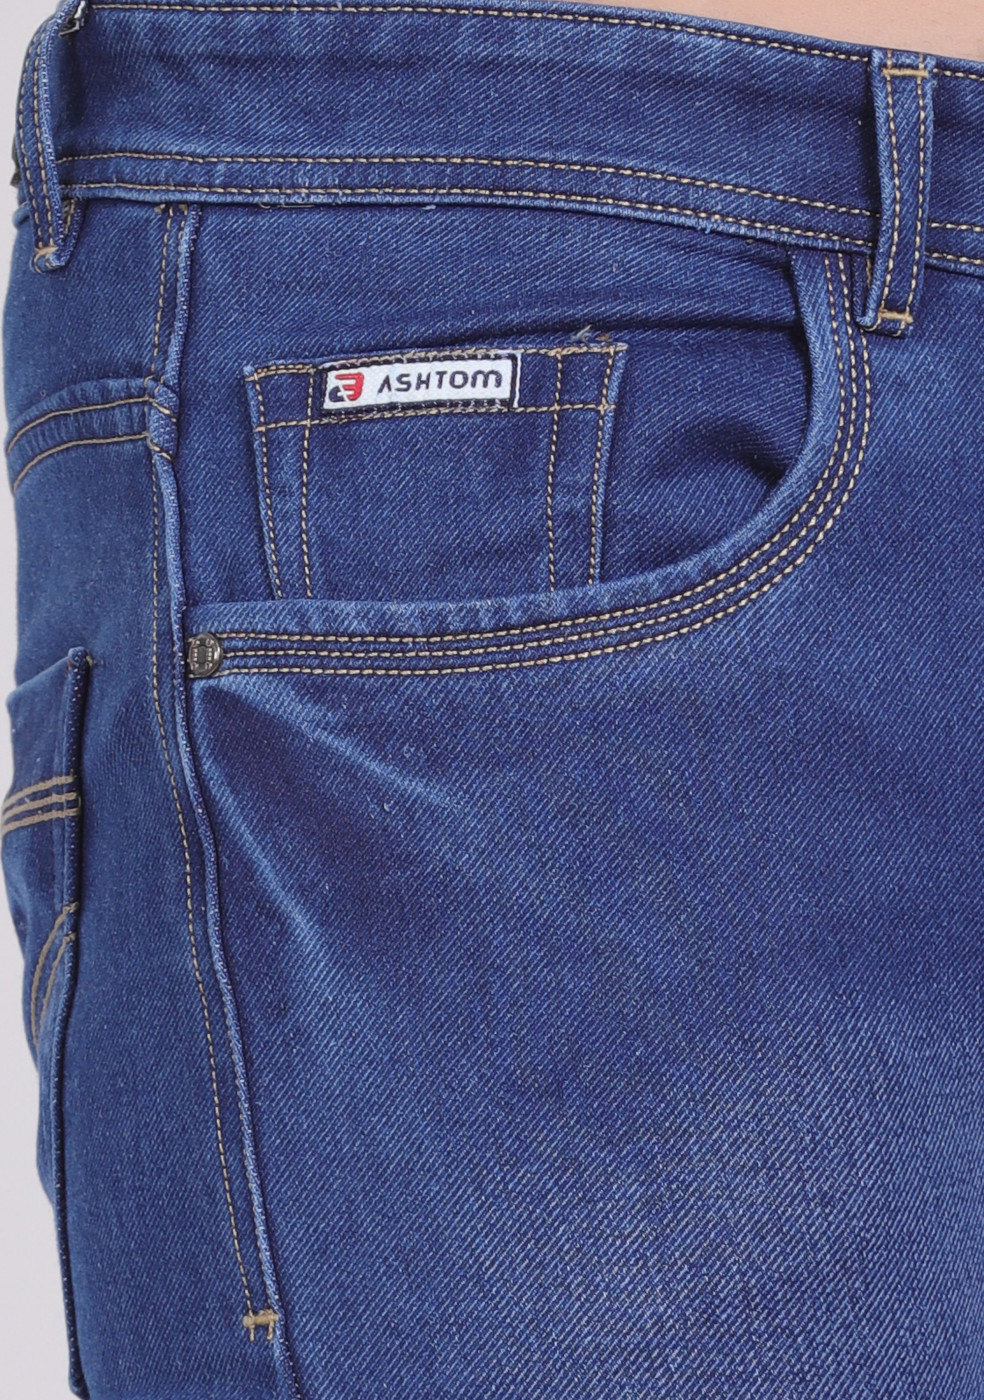 Blue Stretchable Cotton Jeans For Men